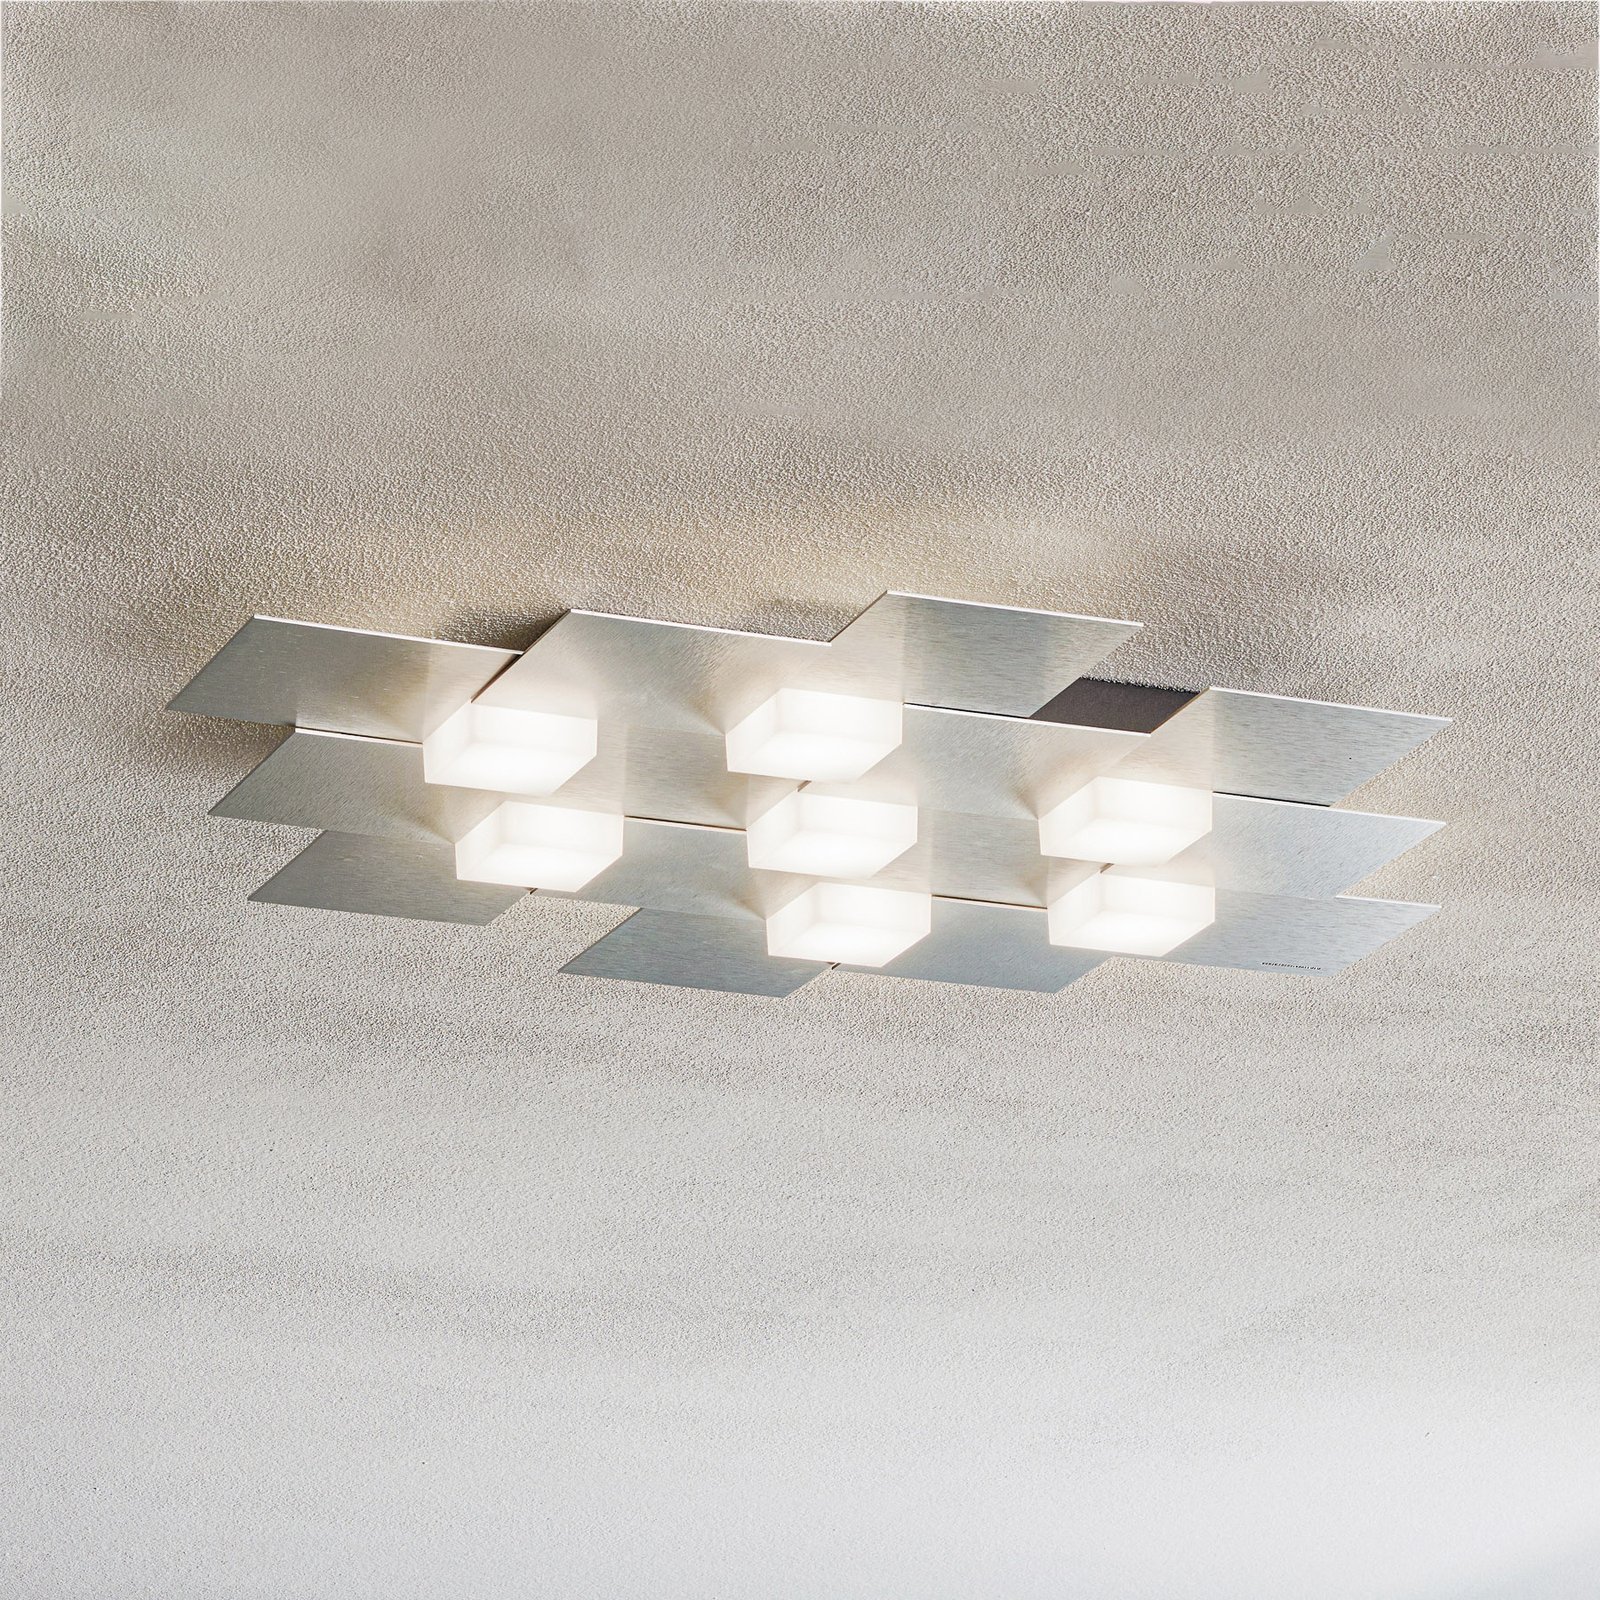 GROSSMANN Creo LED-taklampa 7 ljuskällor aluminium